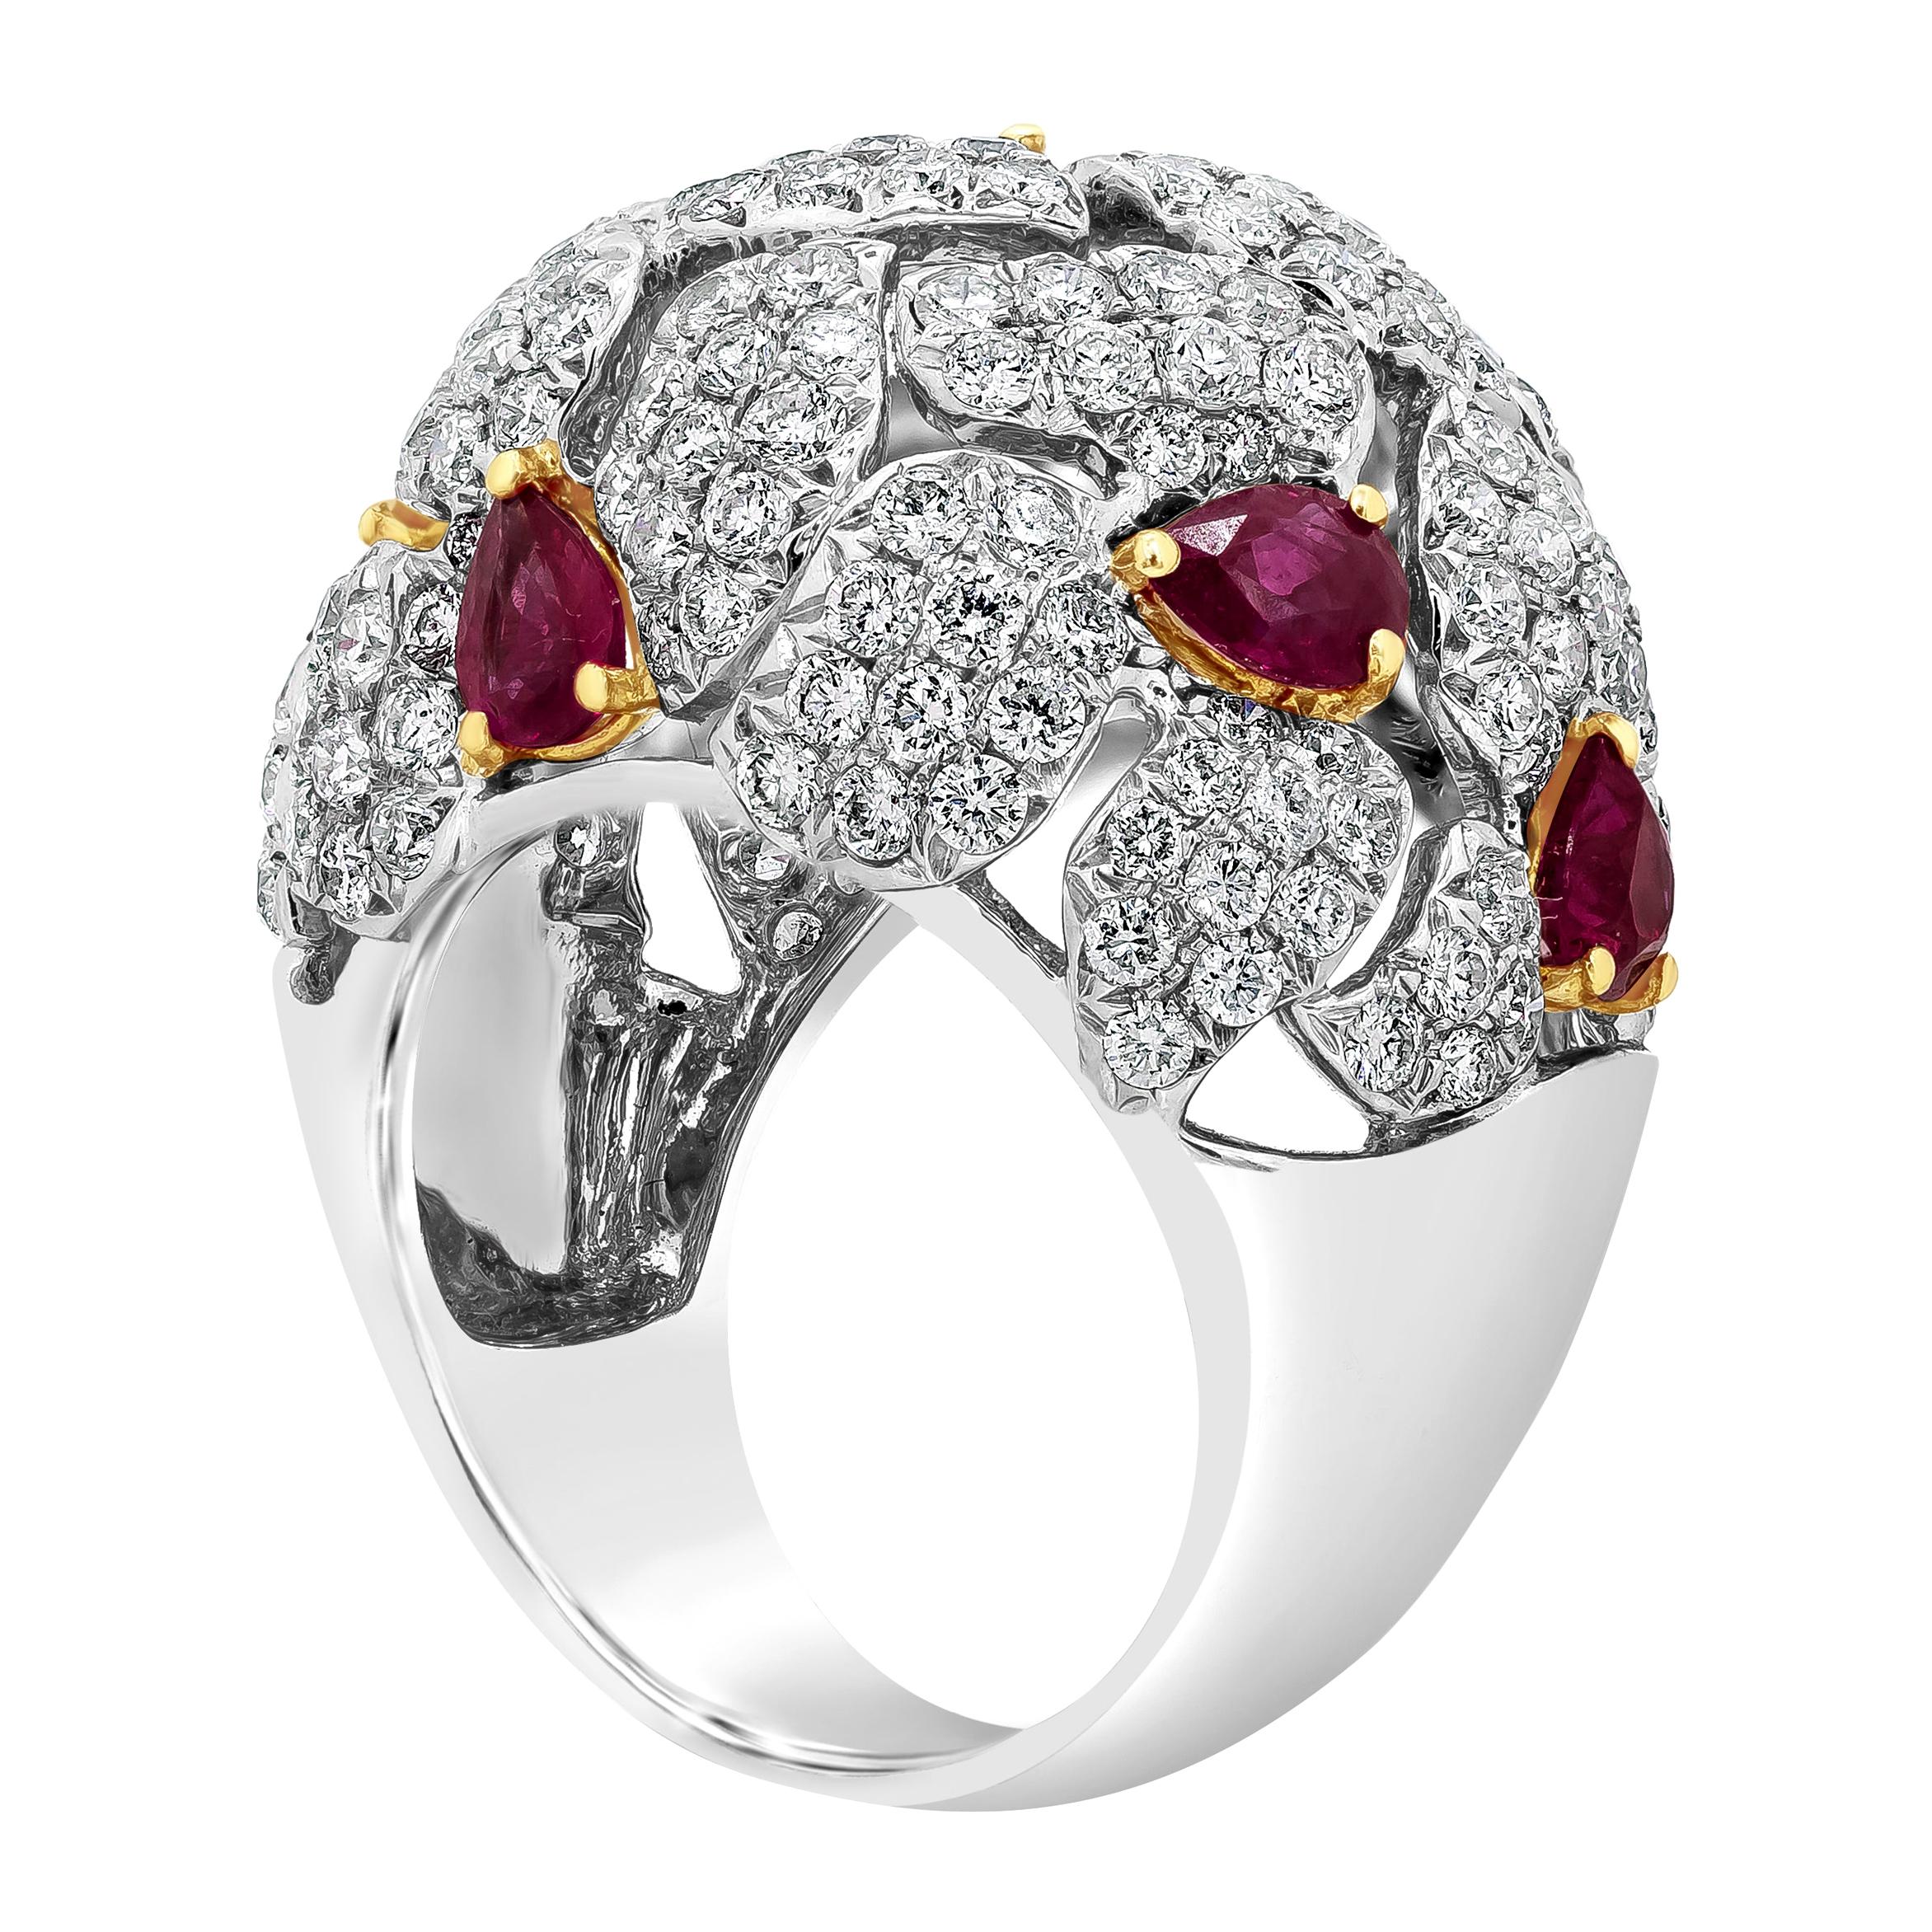 Ein sehr schöner und modischer Ring mit einem Cluster runder Brillanten, akzentuiert mit leuchtenden birnenförmigen Rubinen, gefasst in einer kuppelförmigen durchbrochenen Fassung aus 18 Karat Weißgold. Die Diamanten wiegen insgesamt 3,76 Karat, die